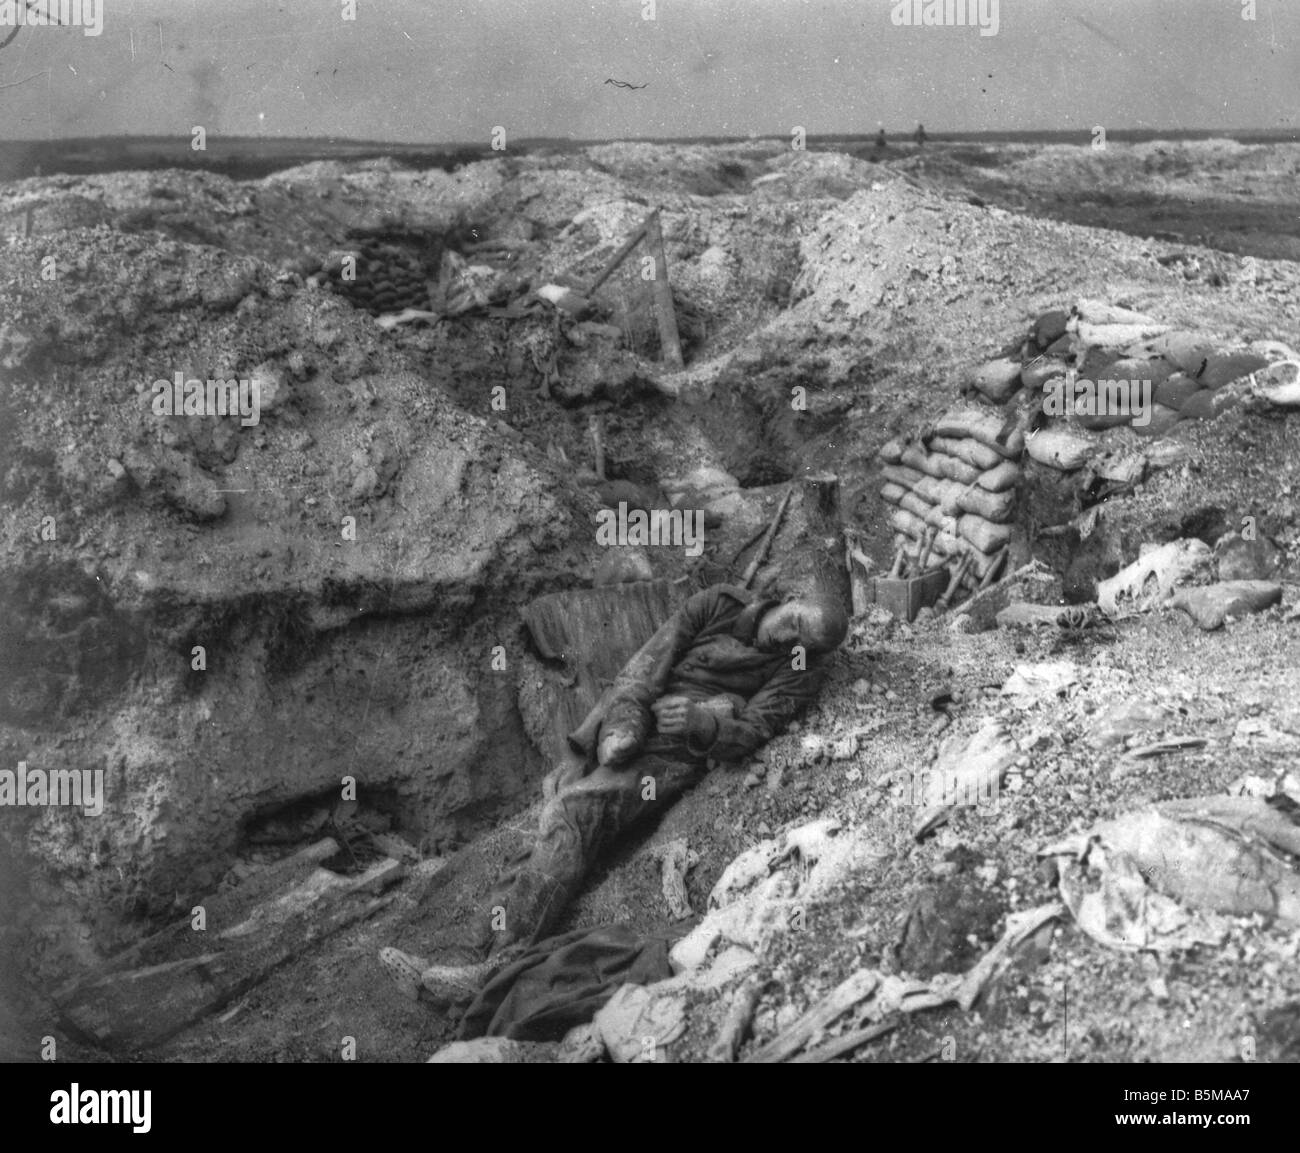 2 G55 W1 191518 bombardé tranchée allemande Première Guerre Mondiale 1915 Histoire Première Guerre mondiale, Front de l'Ouest près de Souain sur l' Aisne début 1915 a b Banque D'Images